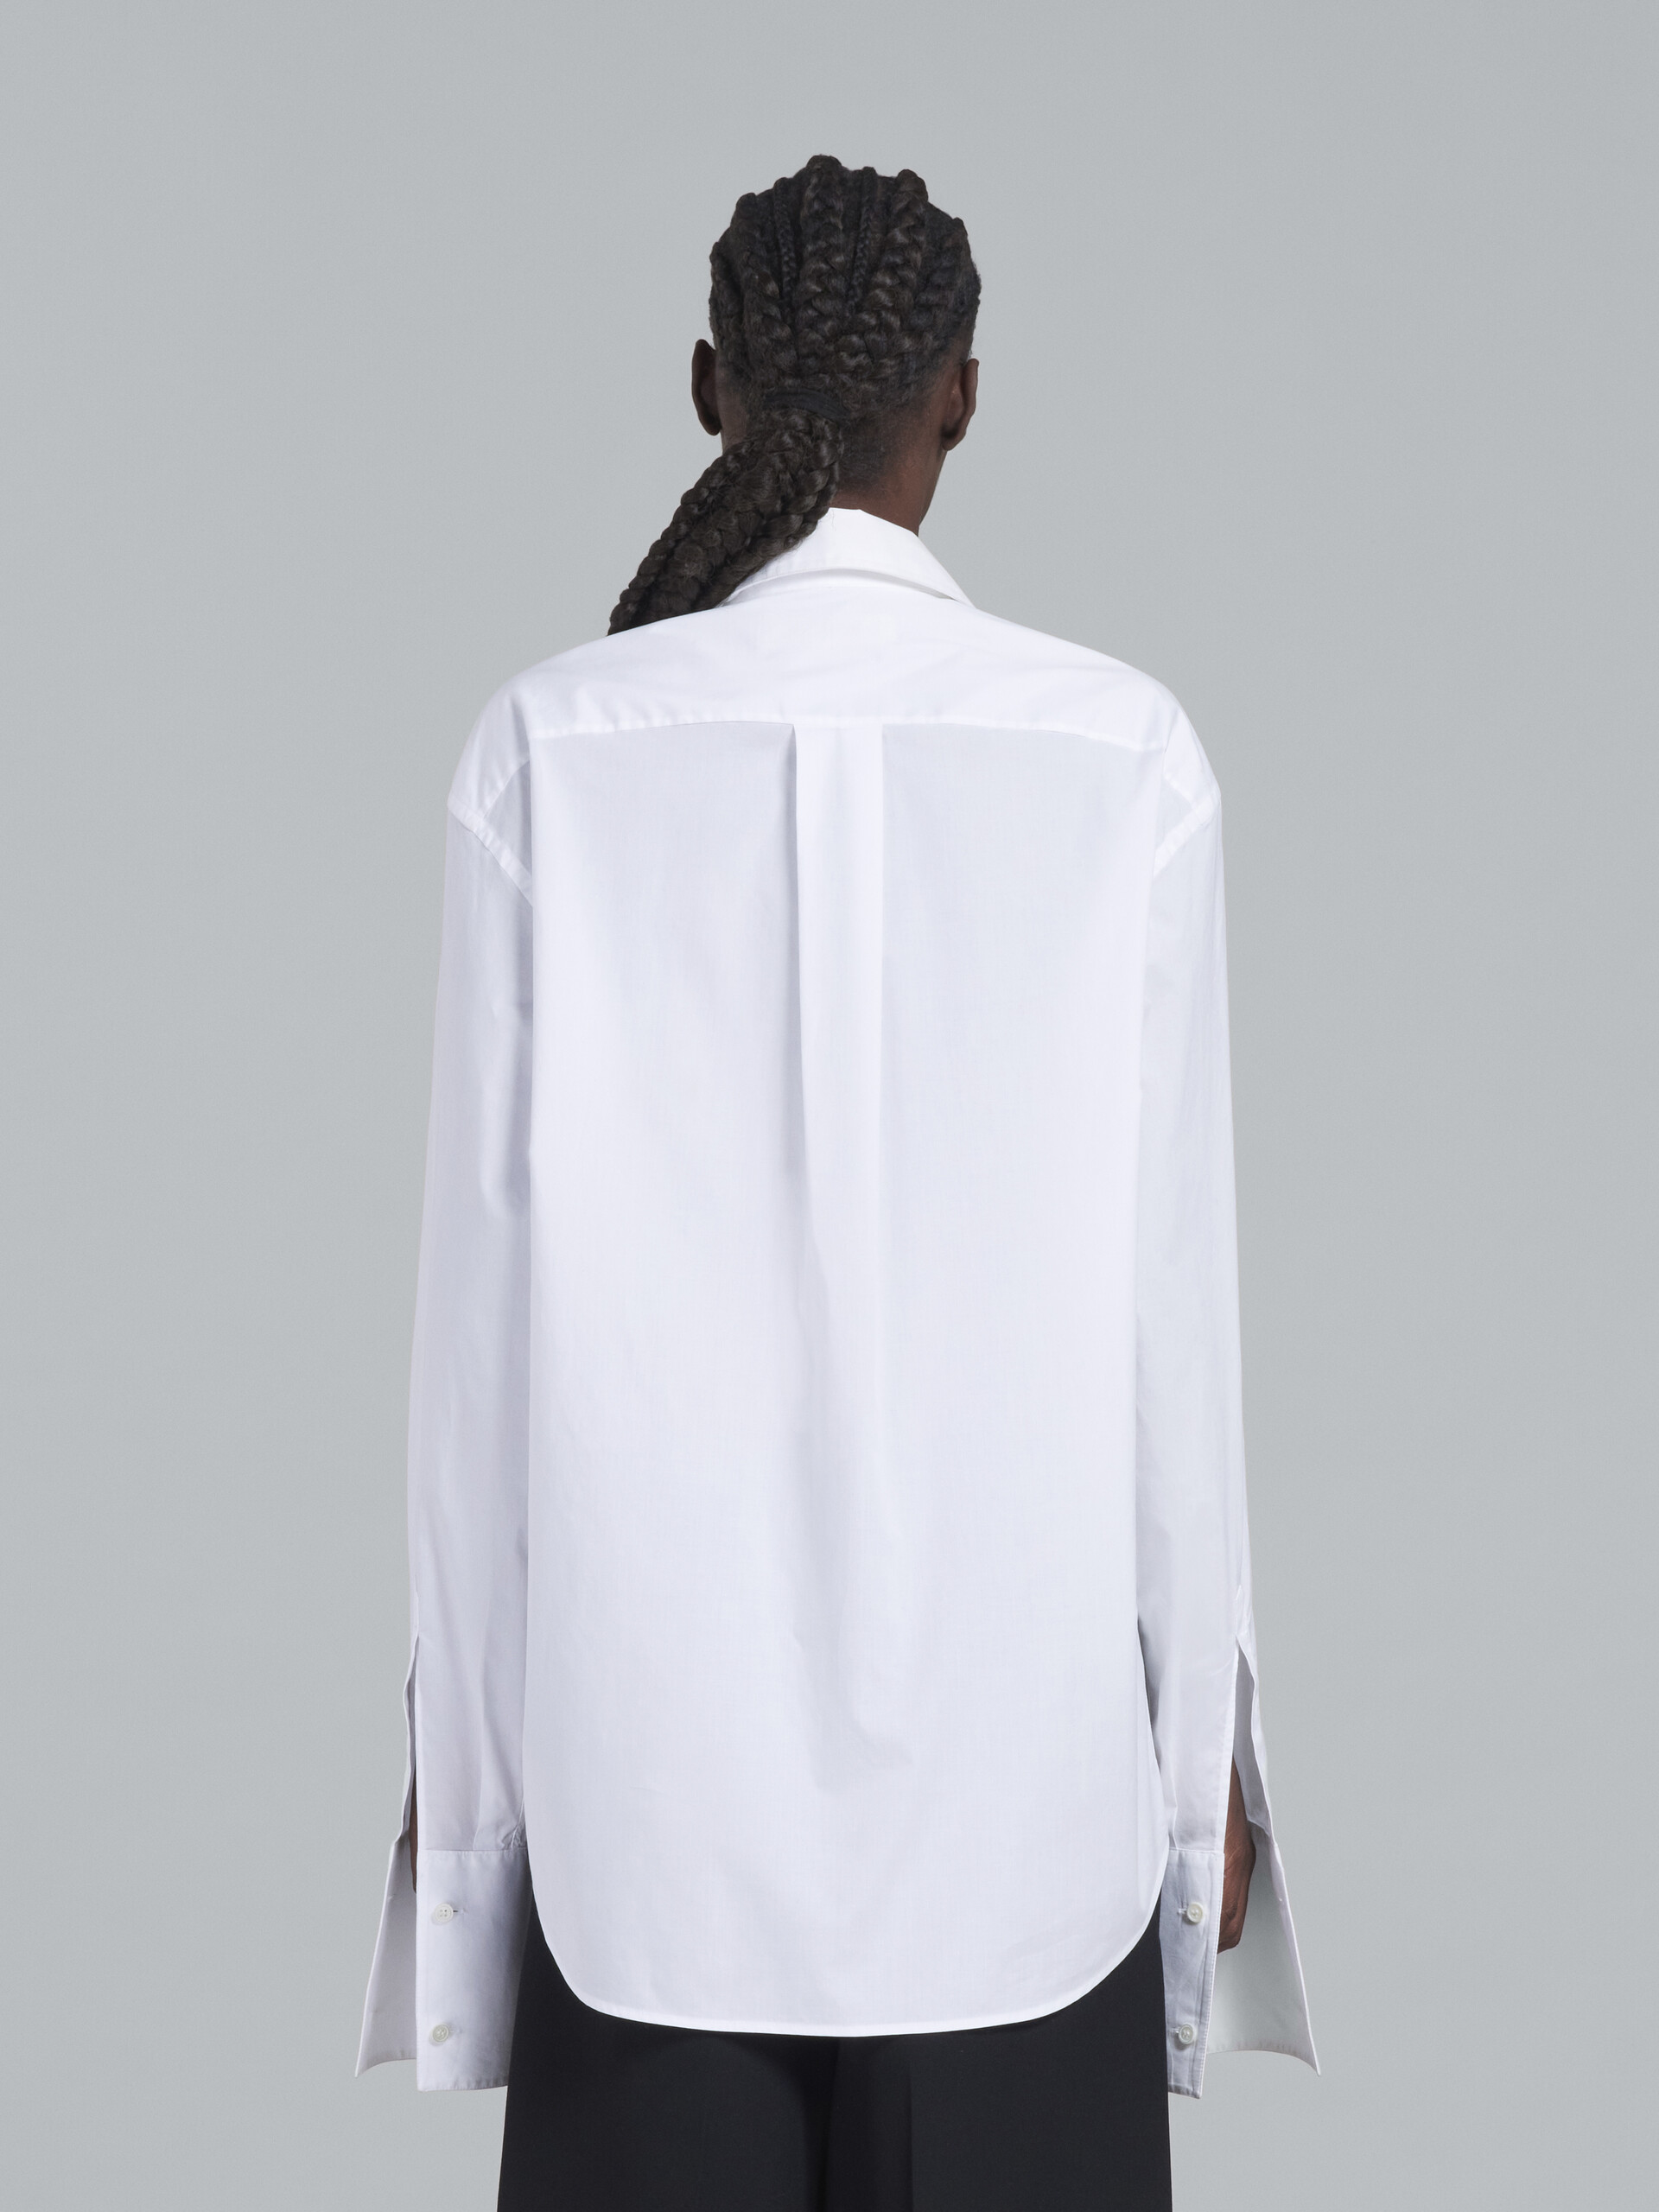 White tuxedo shirt in bio cotton poplin - Shirts - Image 3